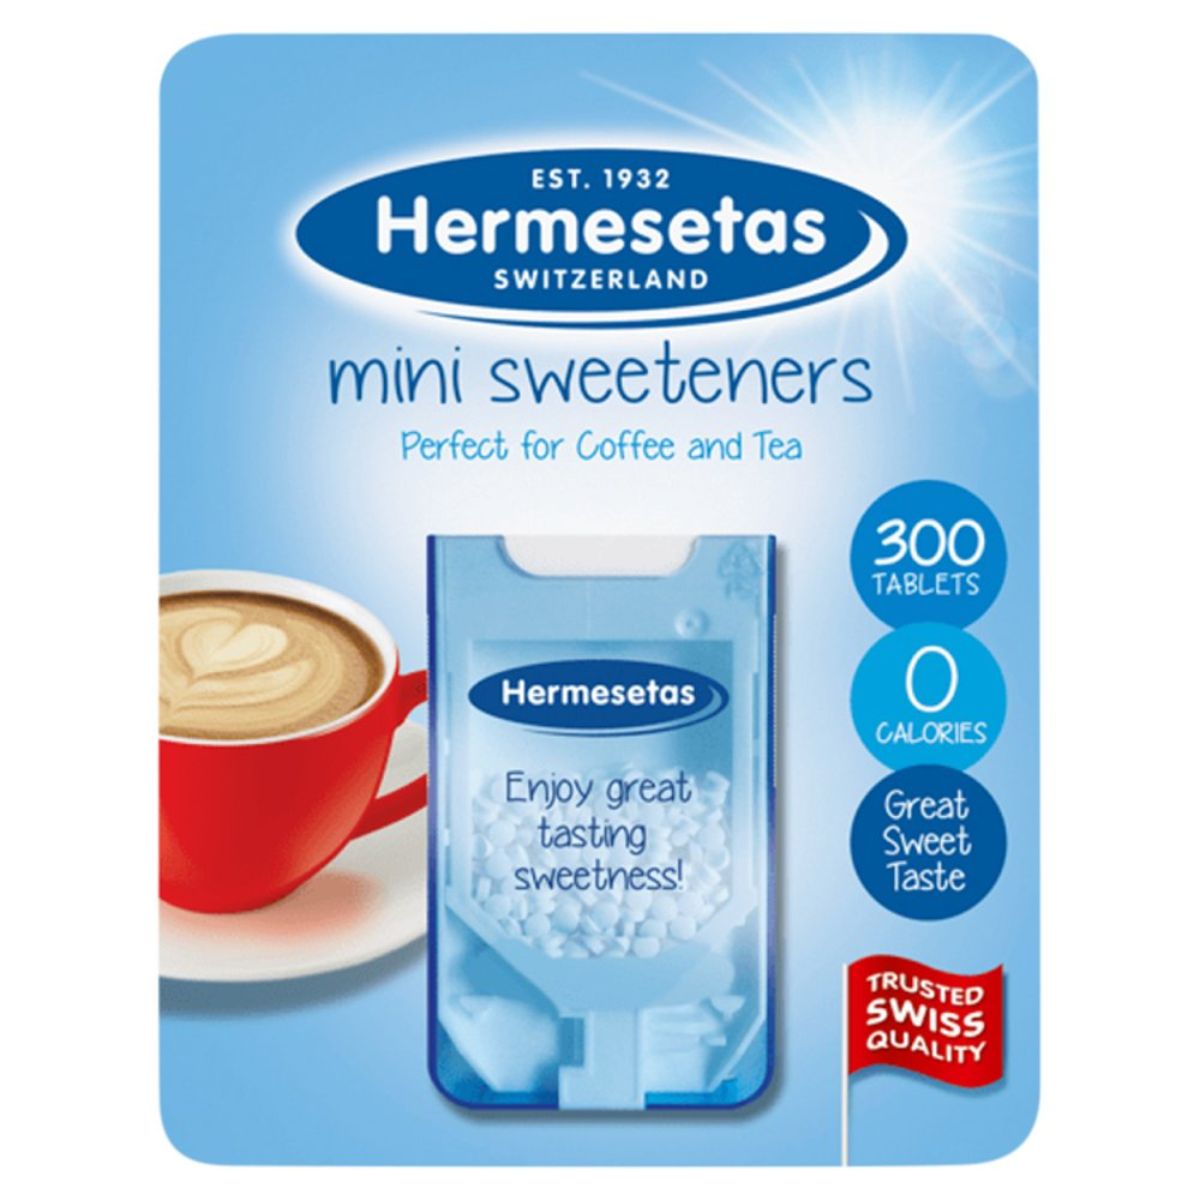 Hermesetas - Mini Sweeteners 300 Tablets - 3.6g in a cup of coffee.